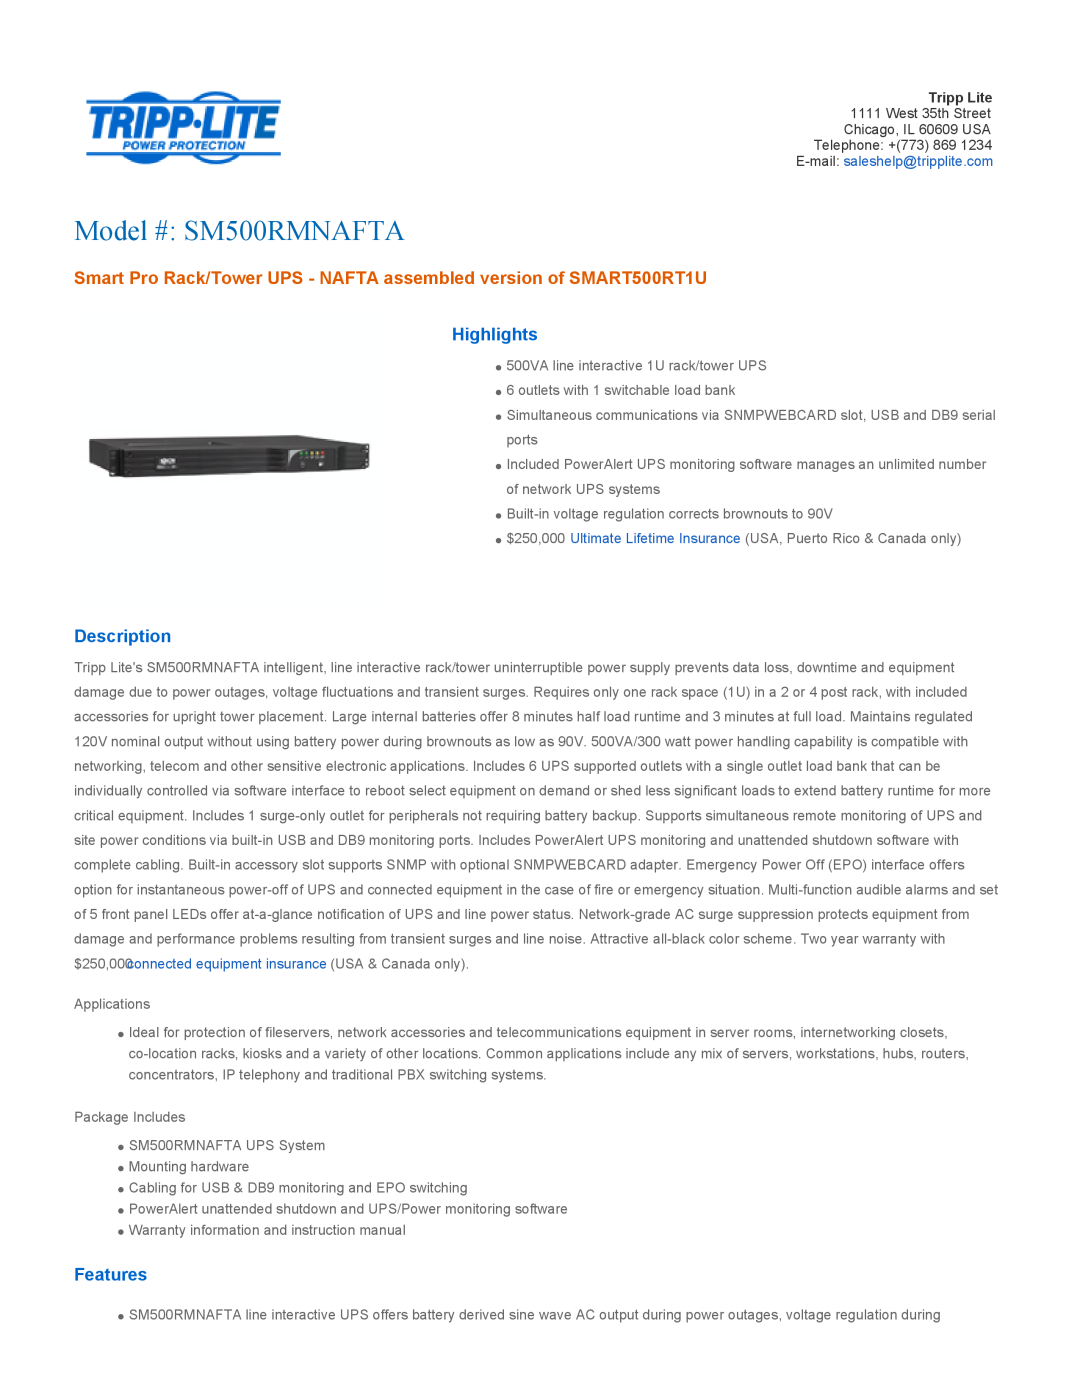 Tripp Lite warranty Highlights, Description, Features, Model # SM500RMNAFTA 